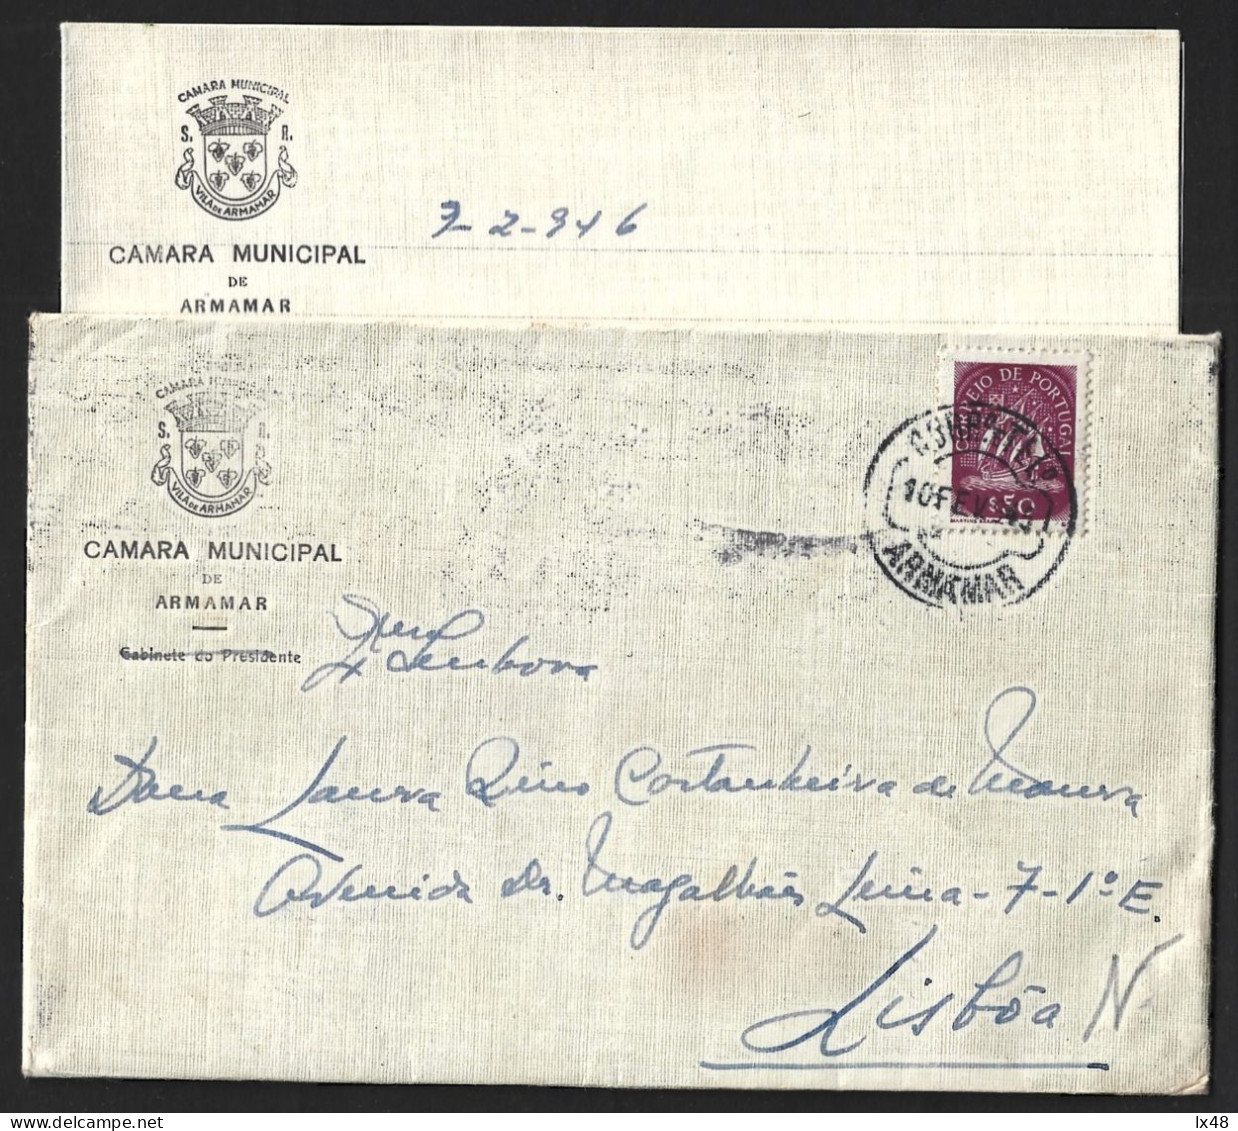 Carta Da Câmara De Armamar. Obliteração De Armamar 1945. Stamp Caravelas. Letter Armamar Chamber.Stamp Caravelas. - Covers & Documents